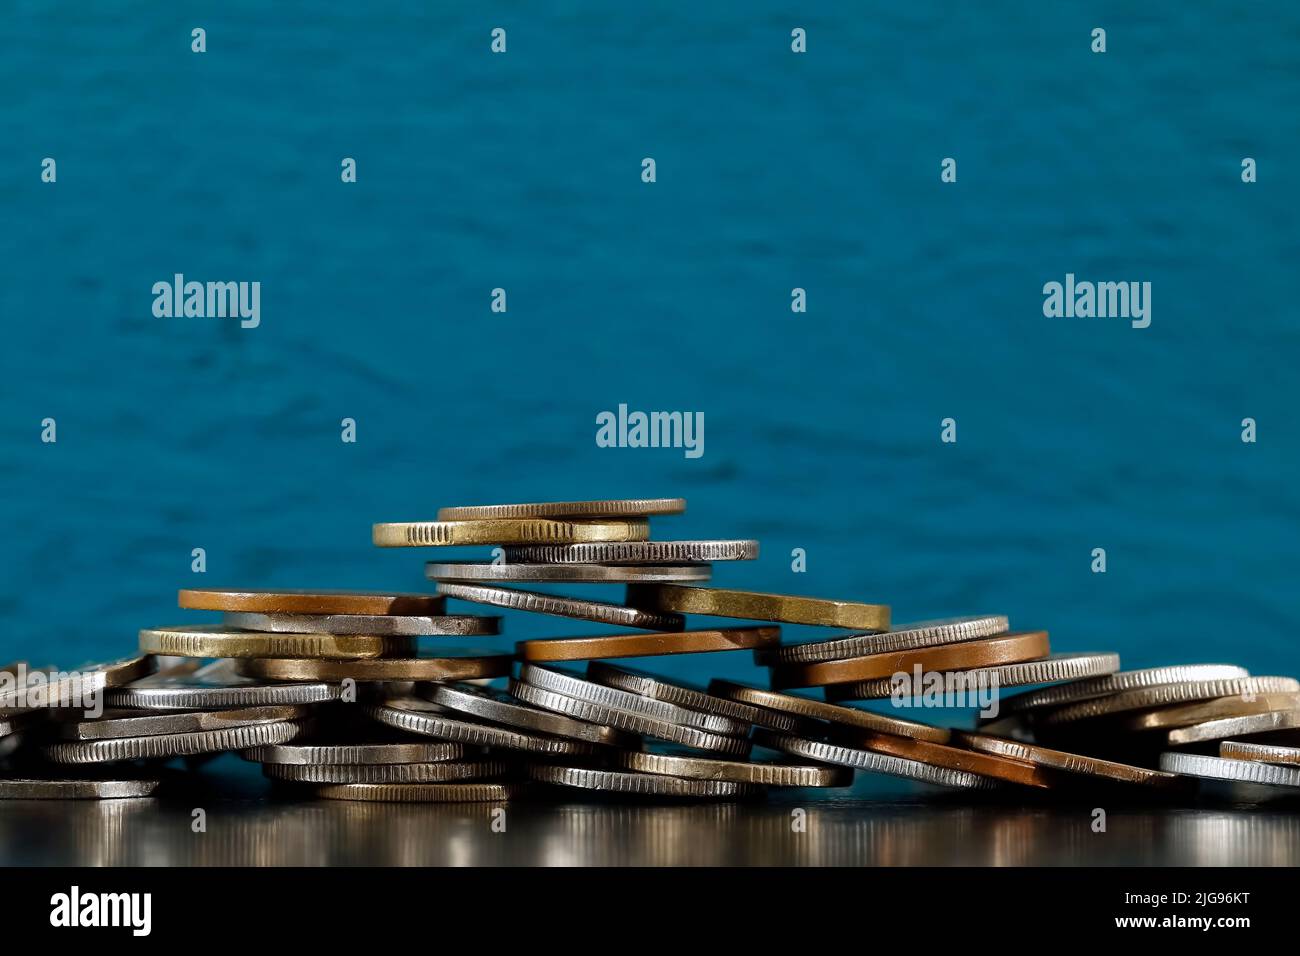 La imagen del dinero, en este caso las monedas, expresa inestabilidad financiera. Foto de stock